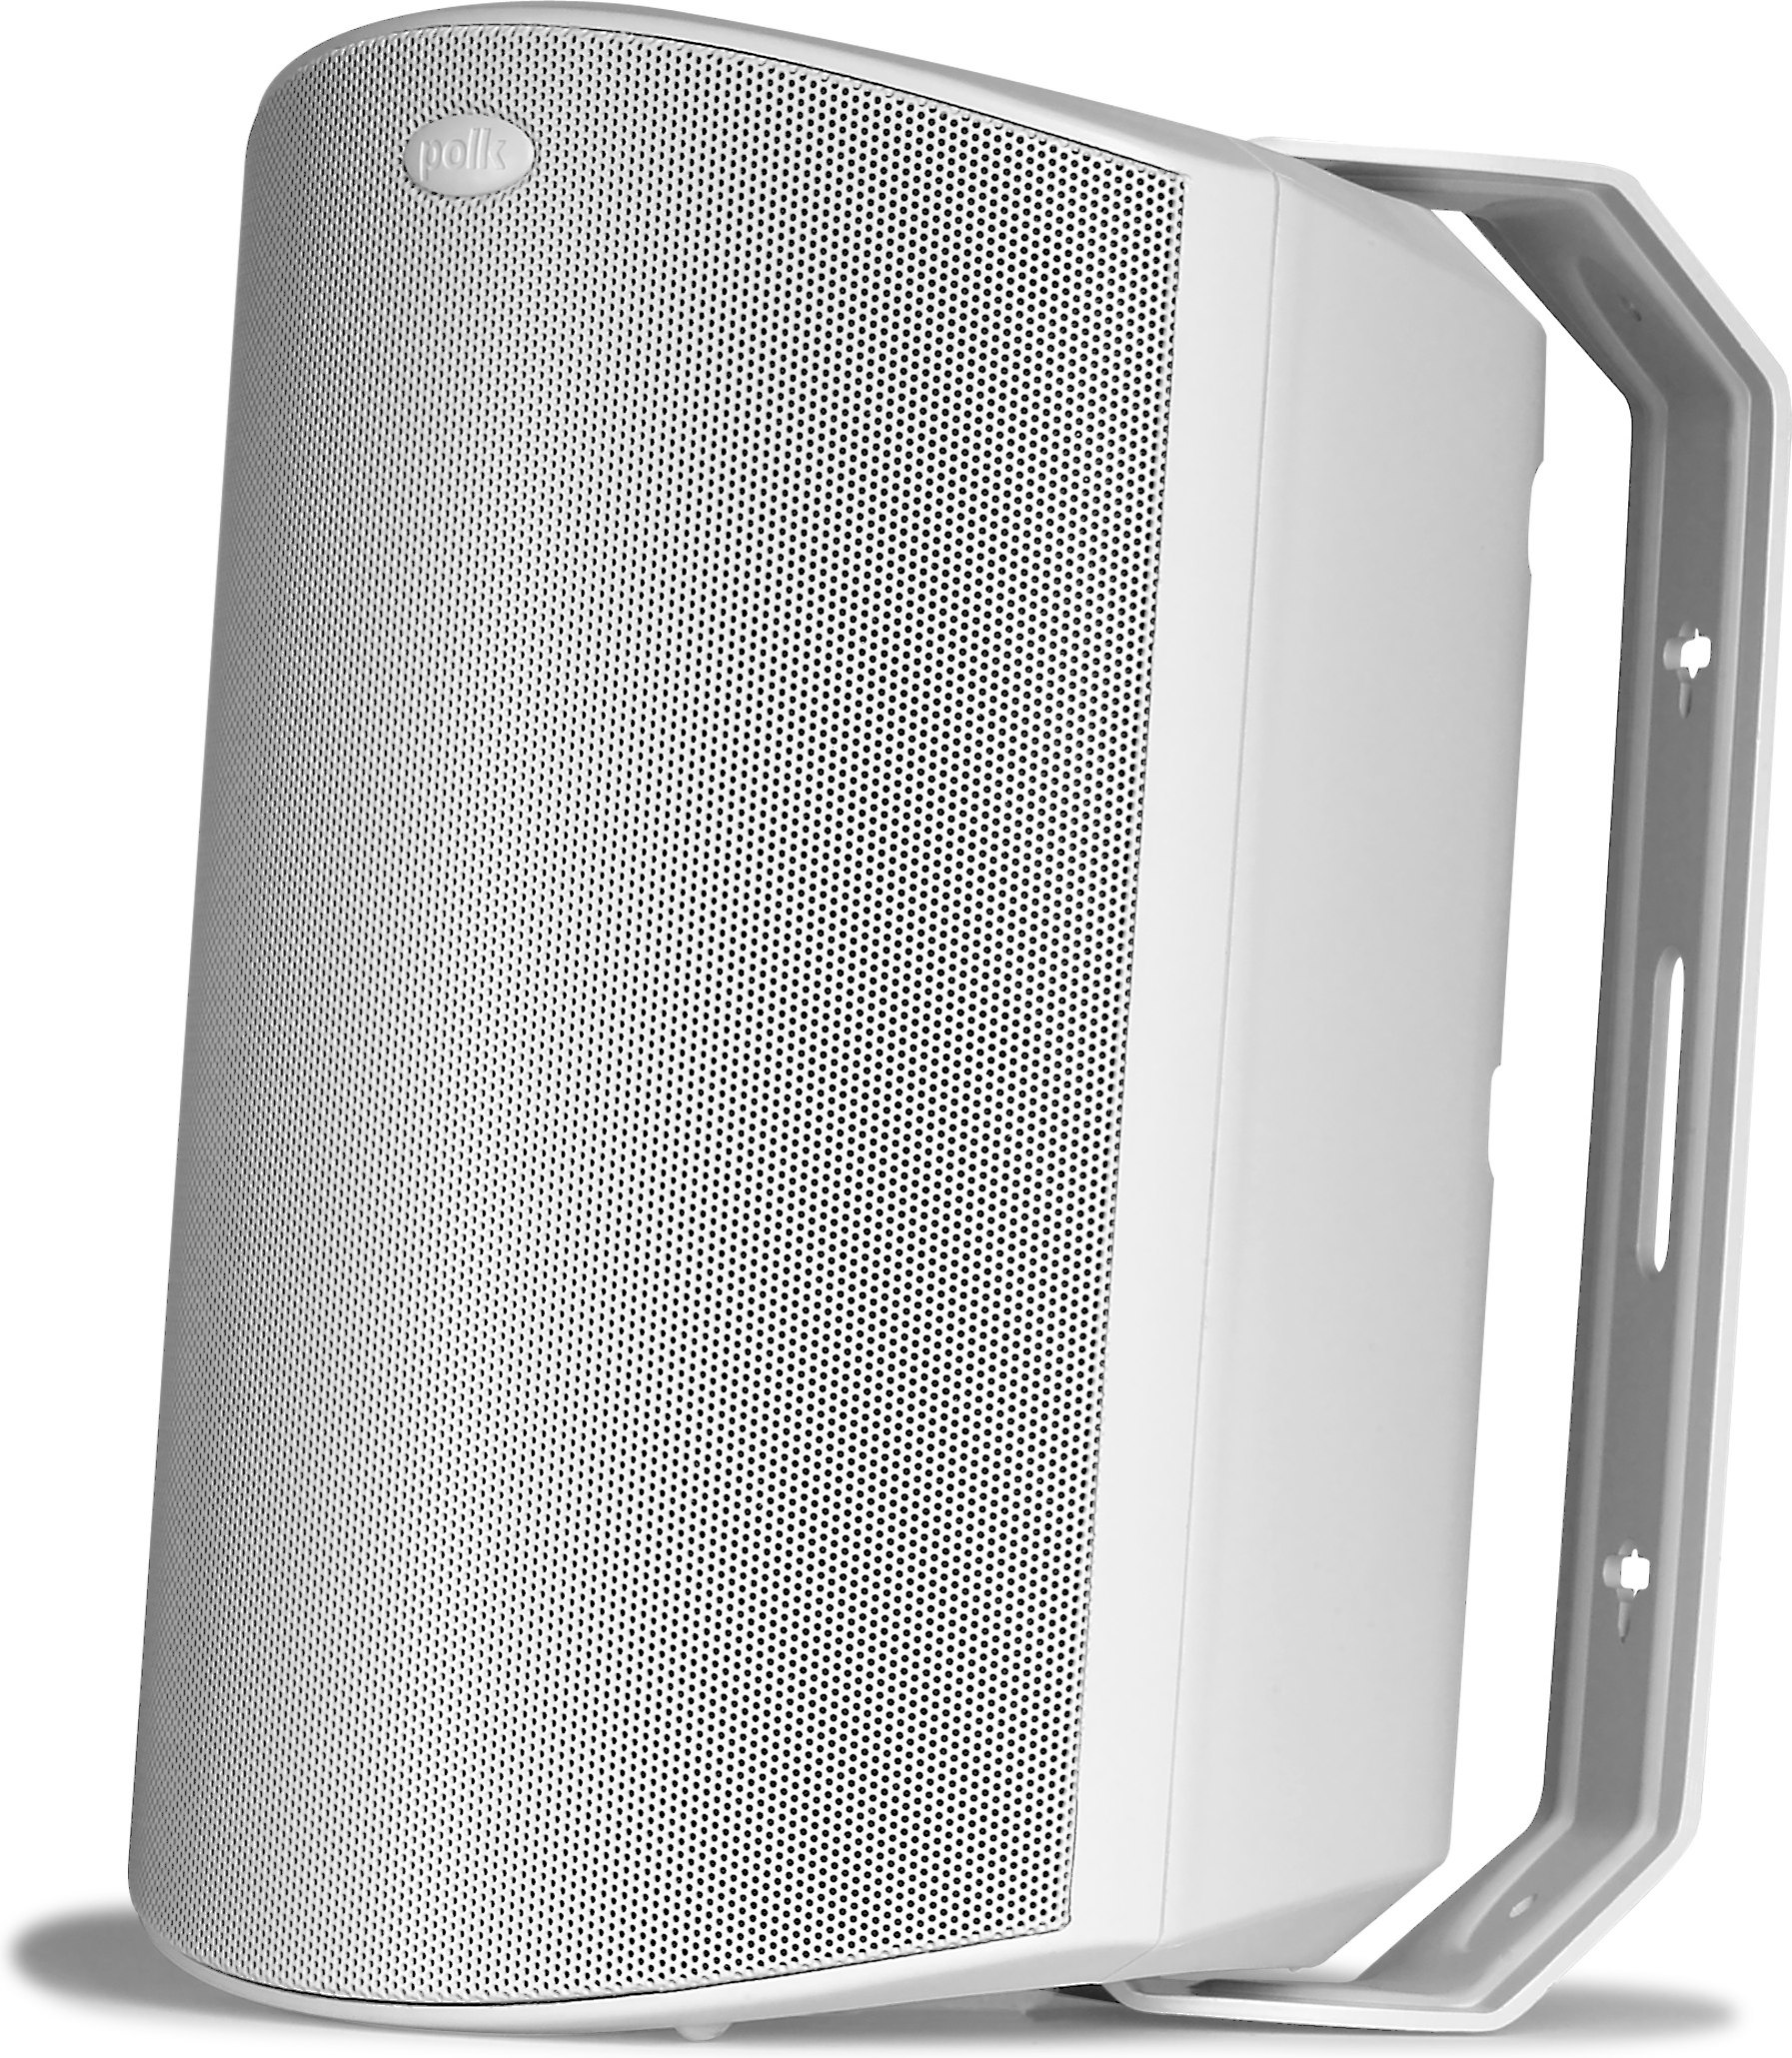 polk audio atrium 8 outdoor speakers